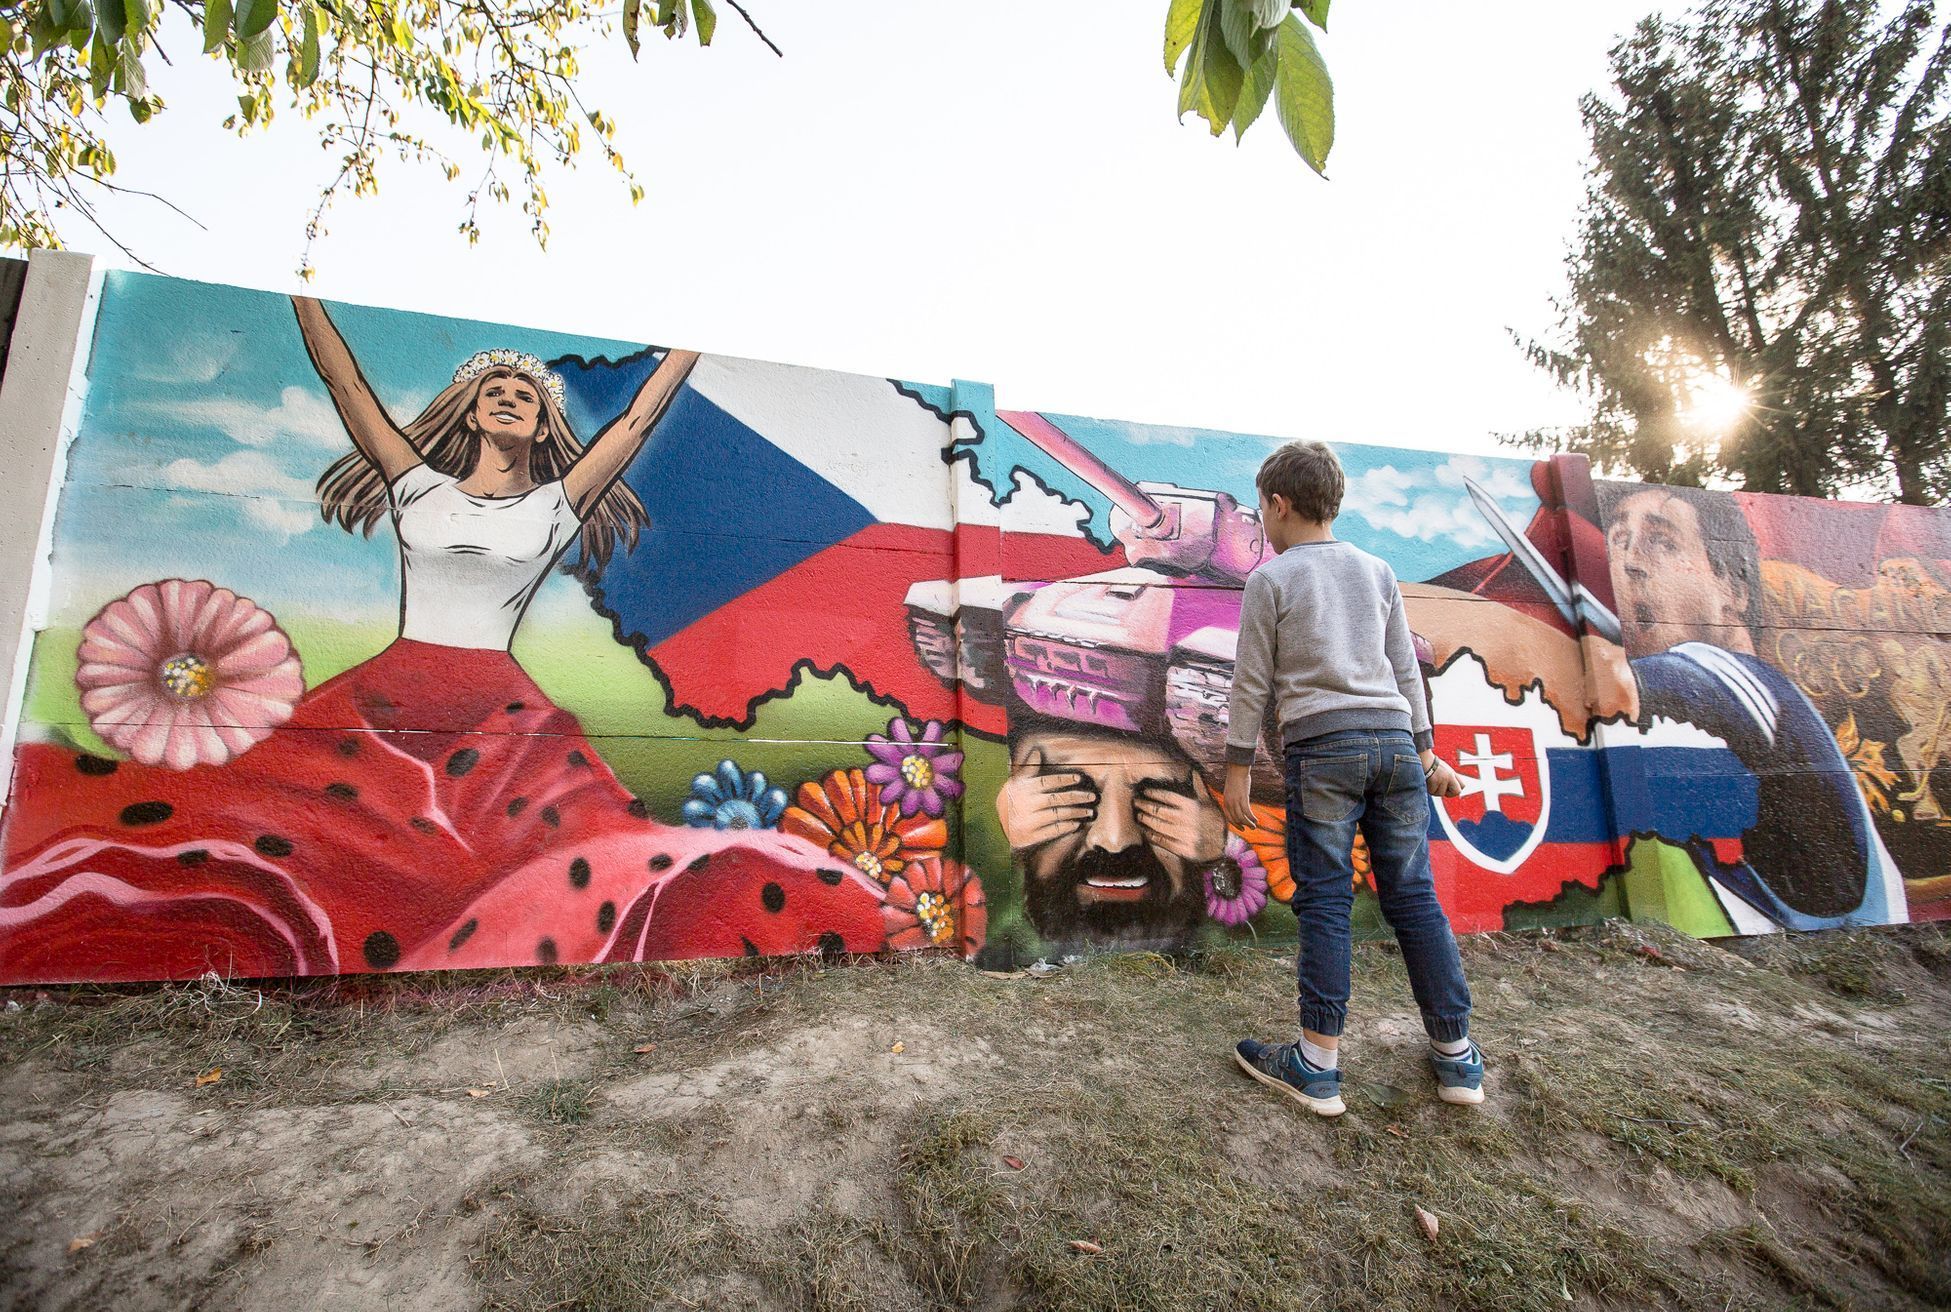 Streetart - graffiti - v obci Chýně ke sto letům Československa